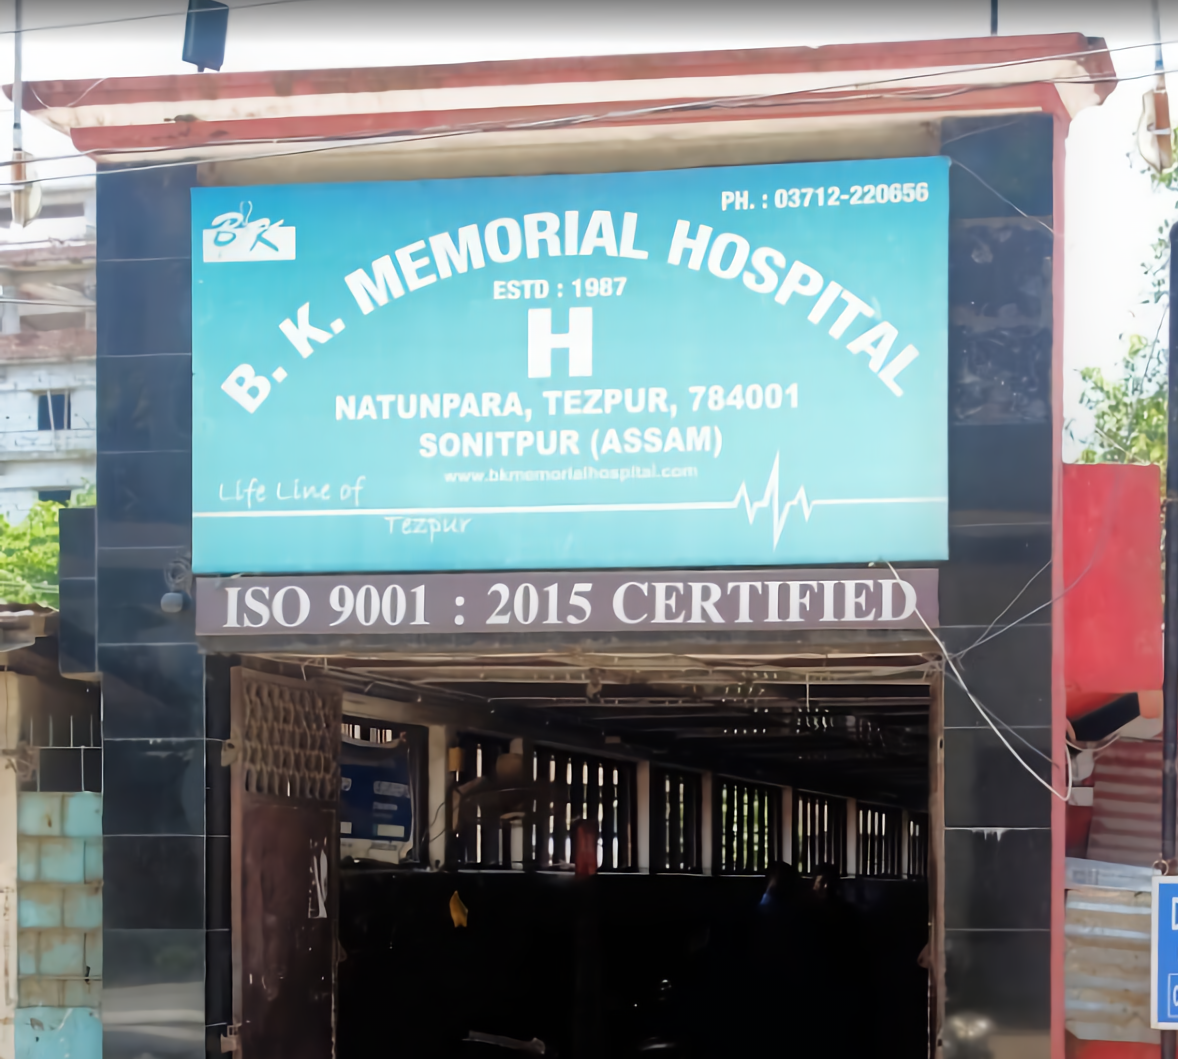 B. K. Memorial Hospital